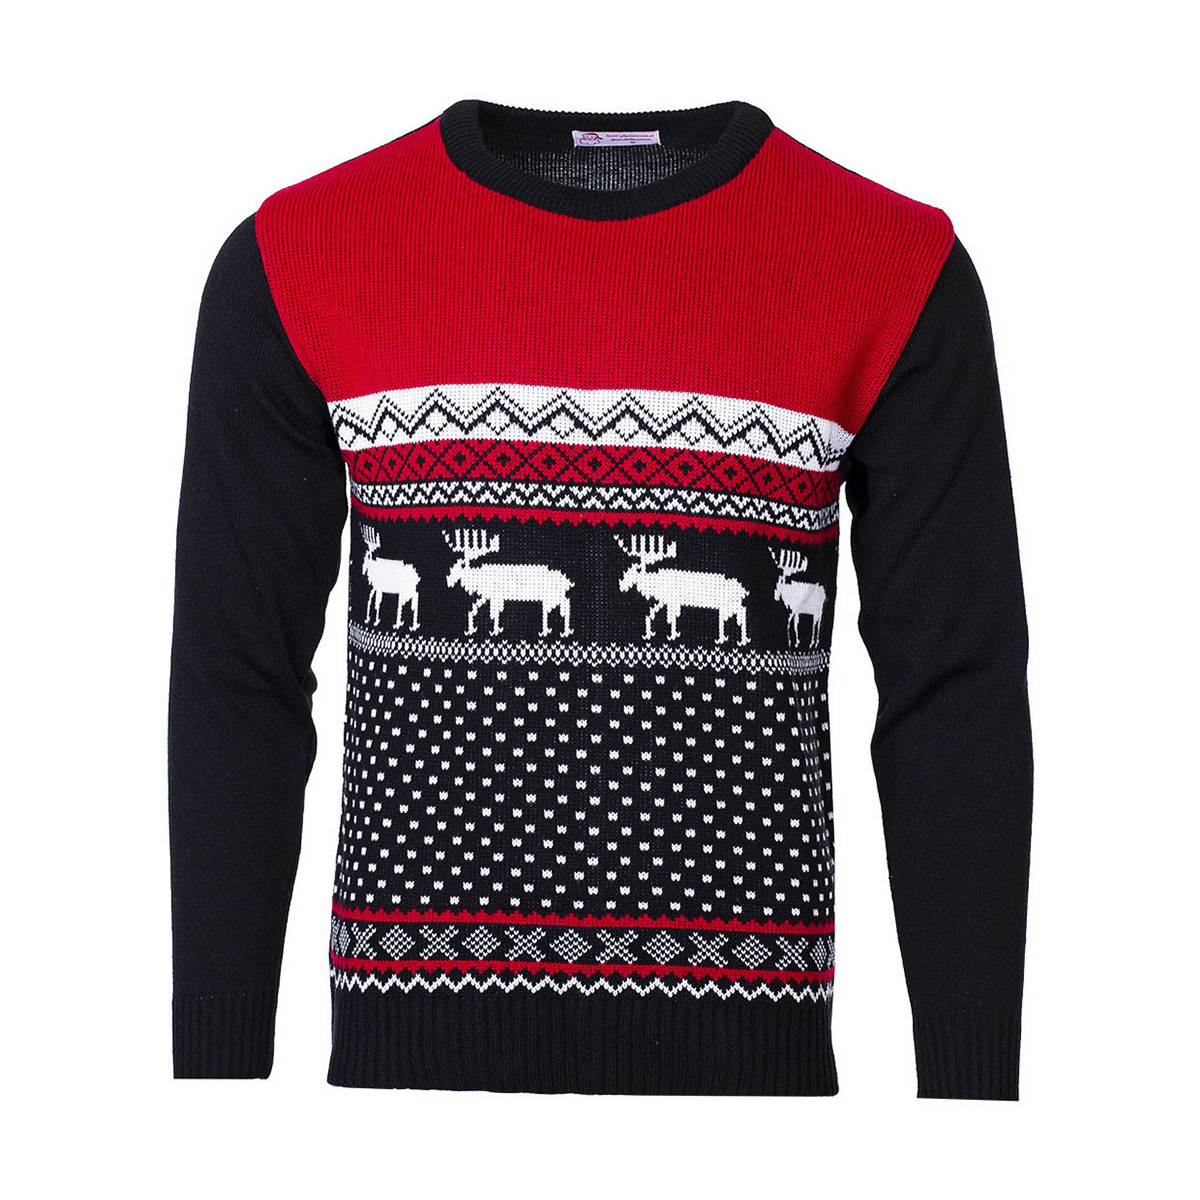 Textil Svetry Wayfarer Vánoční svetr se sobem Marching Reindeer červený Černá/Červená